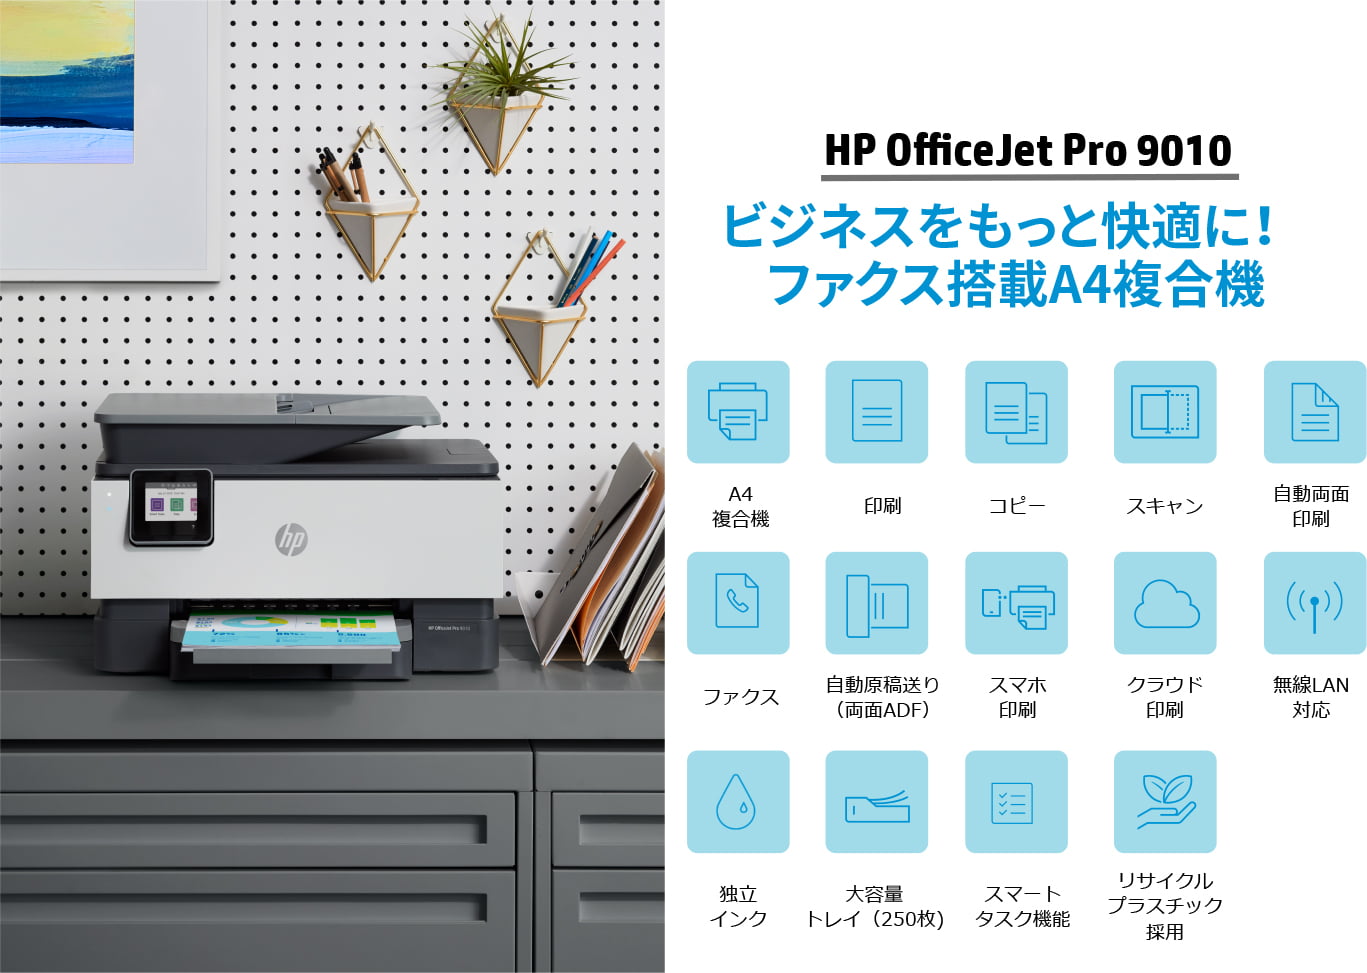 HP プリンター A4インクジェット複合機 HP OfficeJet Pro 8020 家庭用